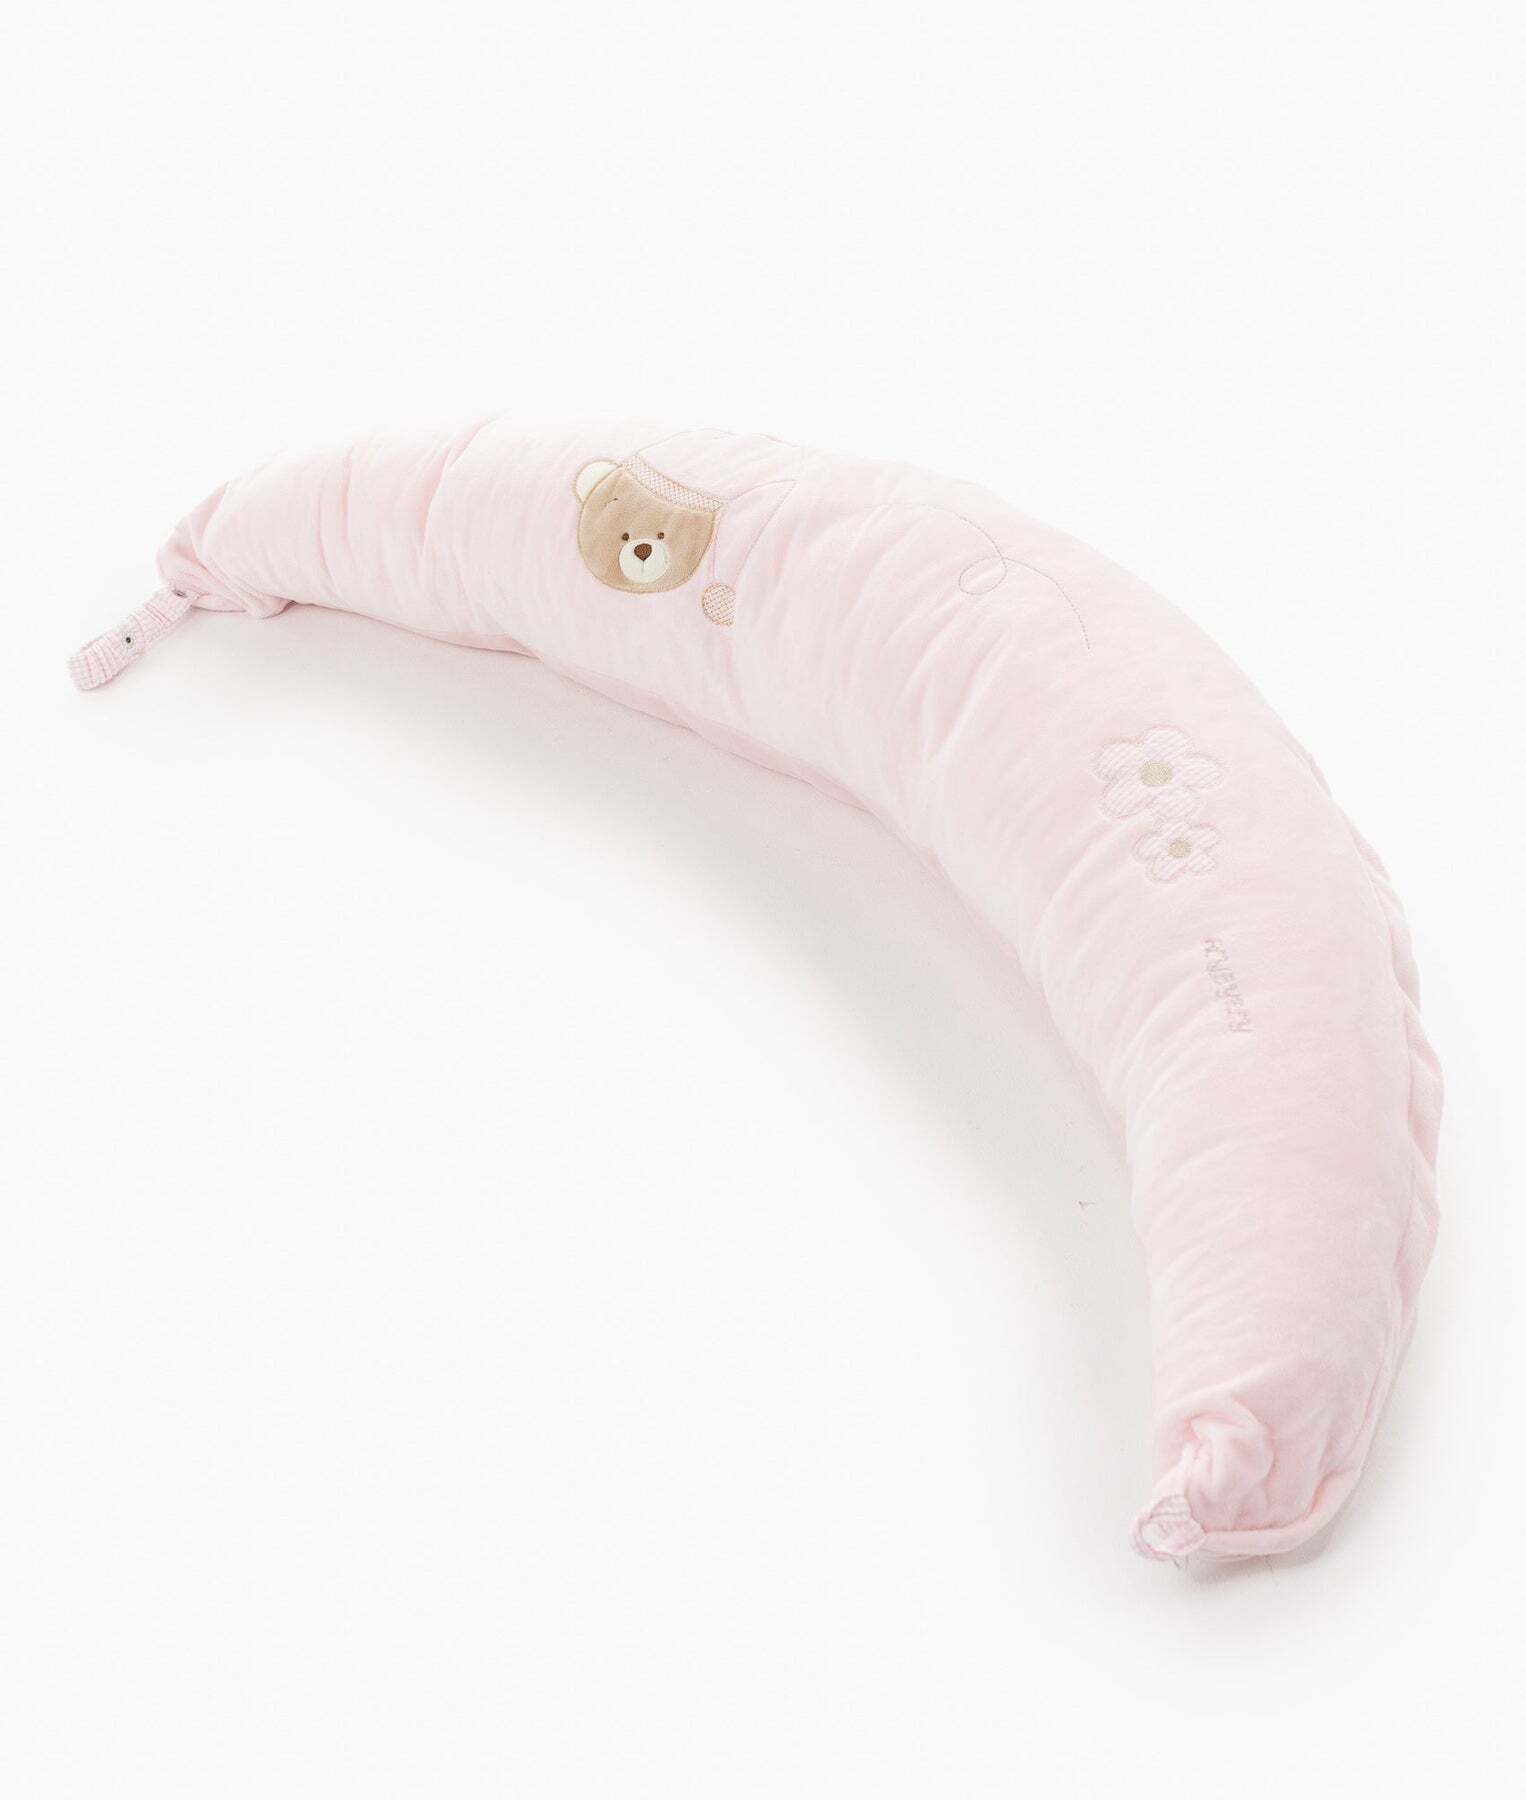 nursing-lounge-pillow-pink-680_1800x1800